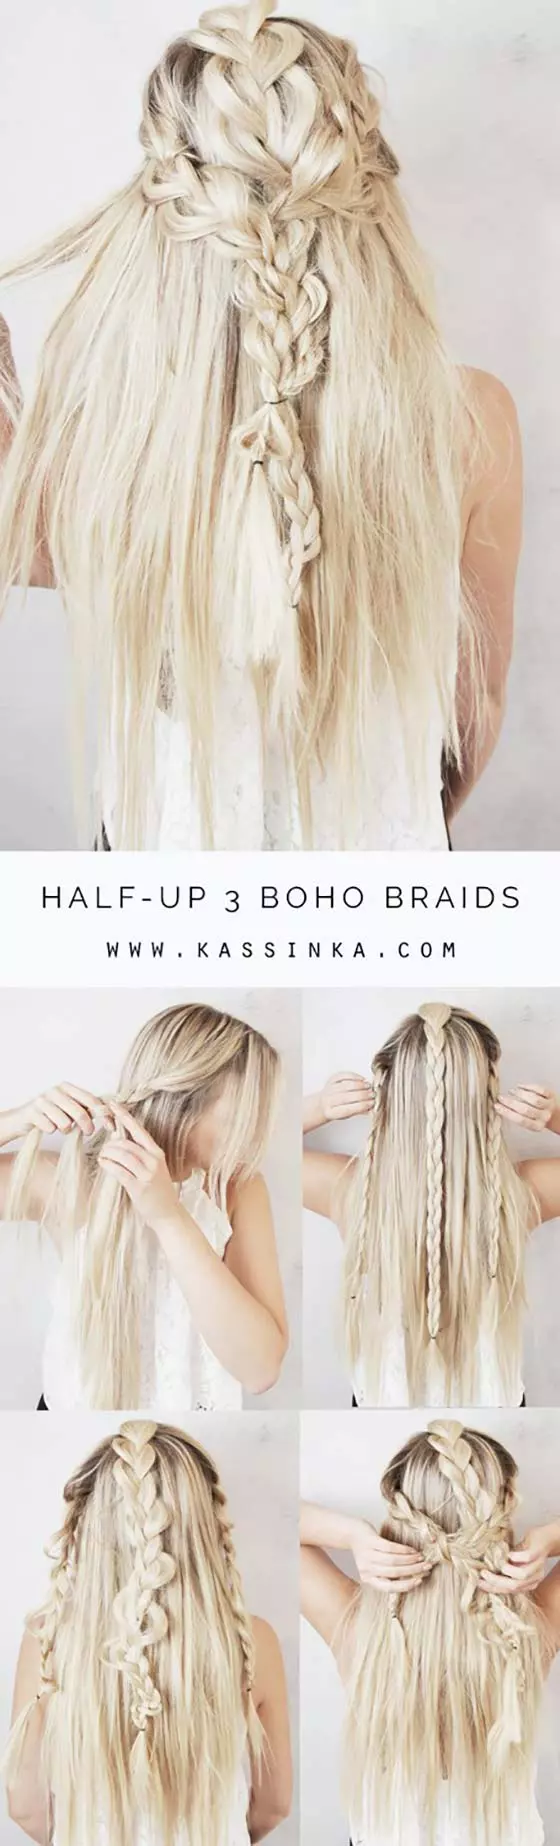 Half-up 3 boho braids for long hair